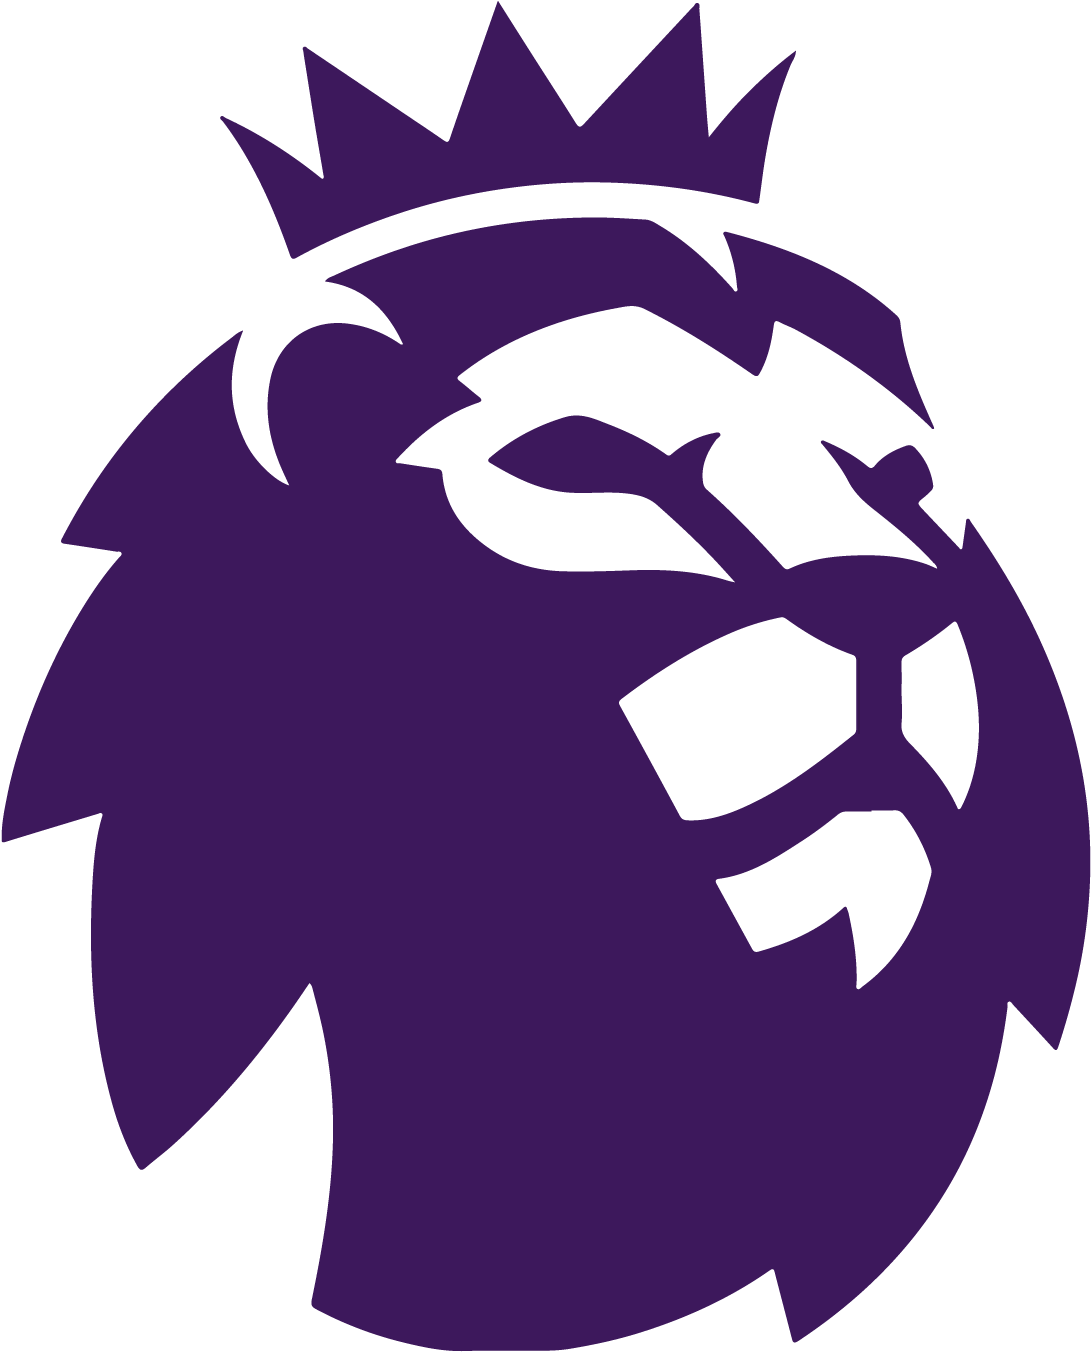 Premier League Logo SVG